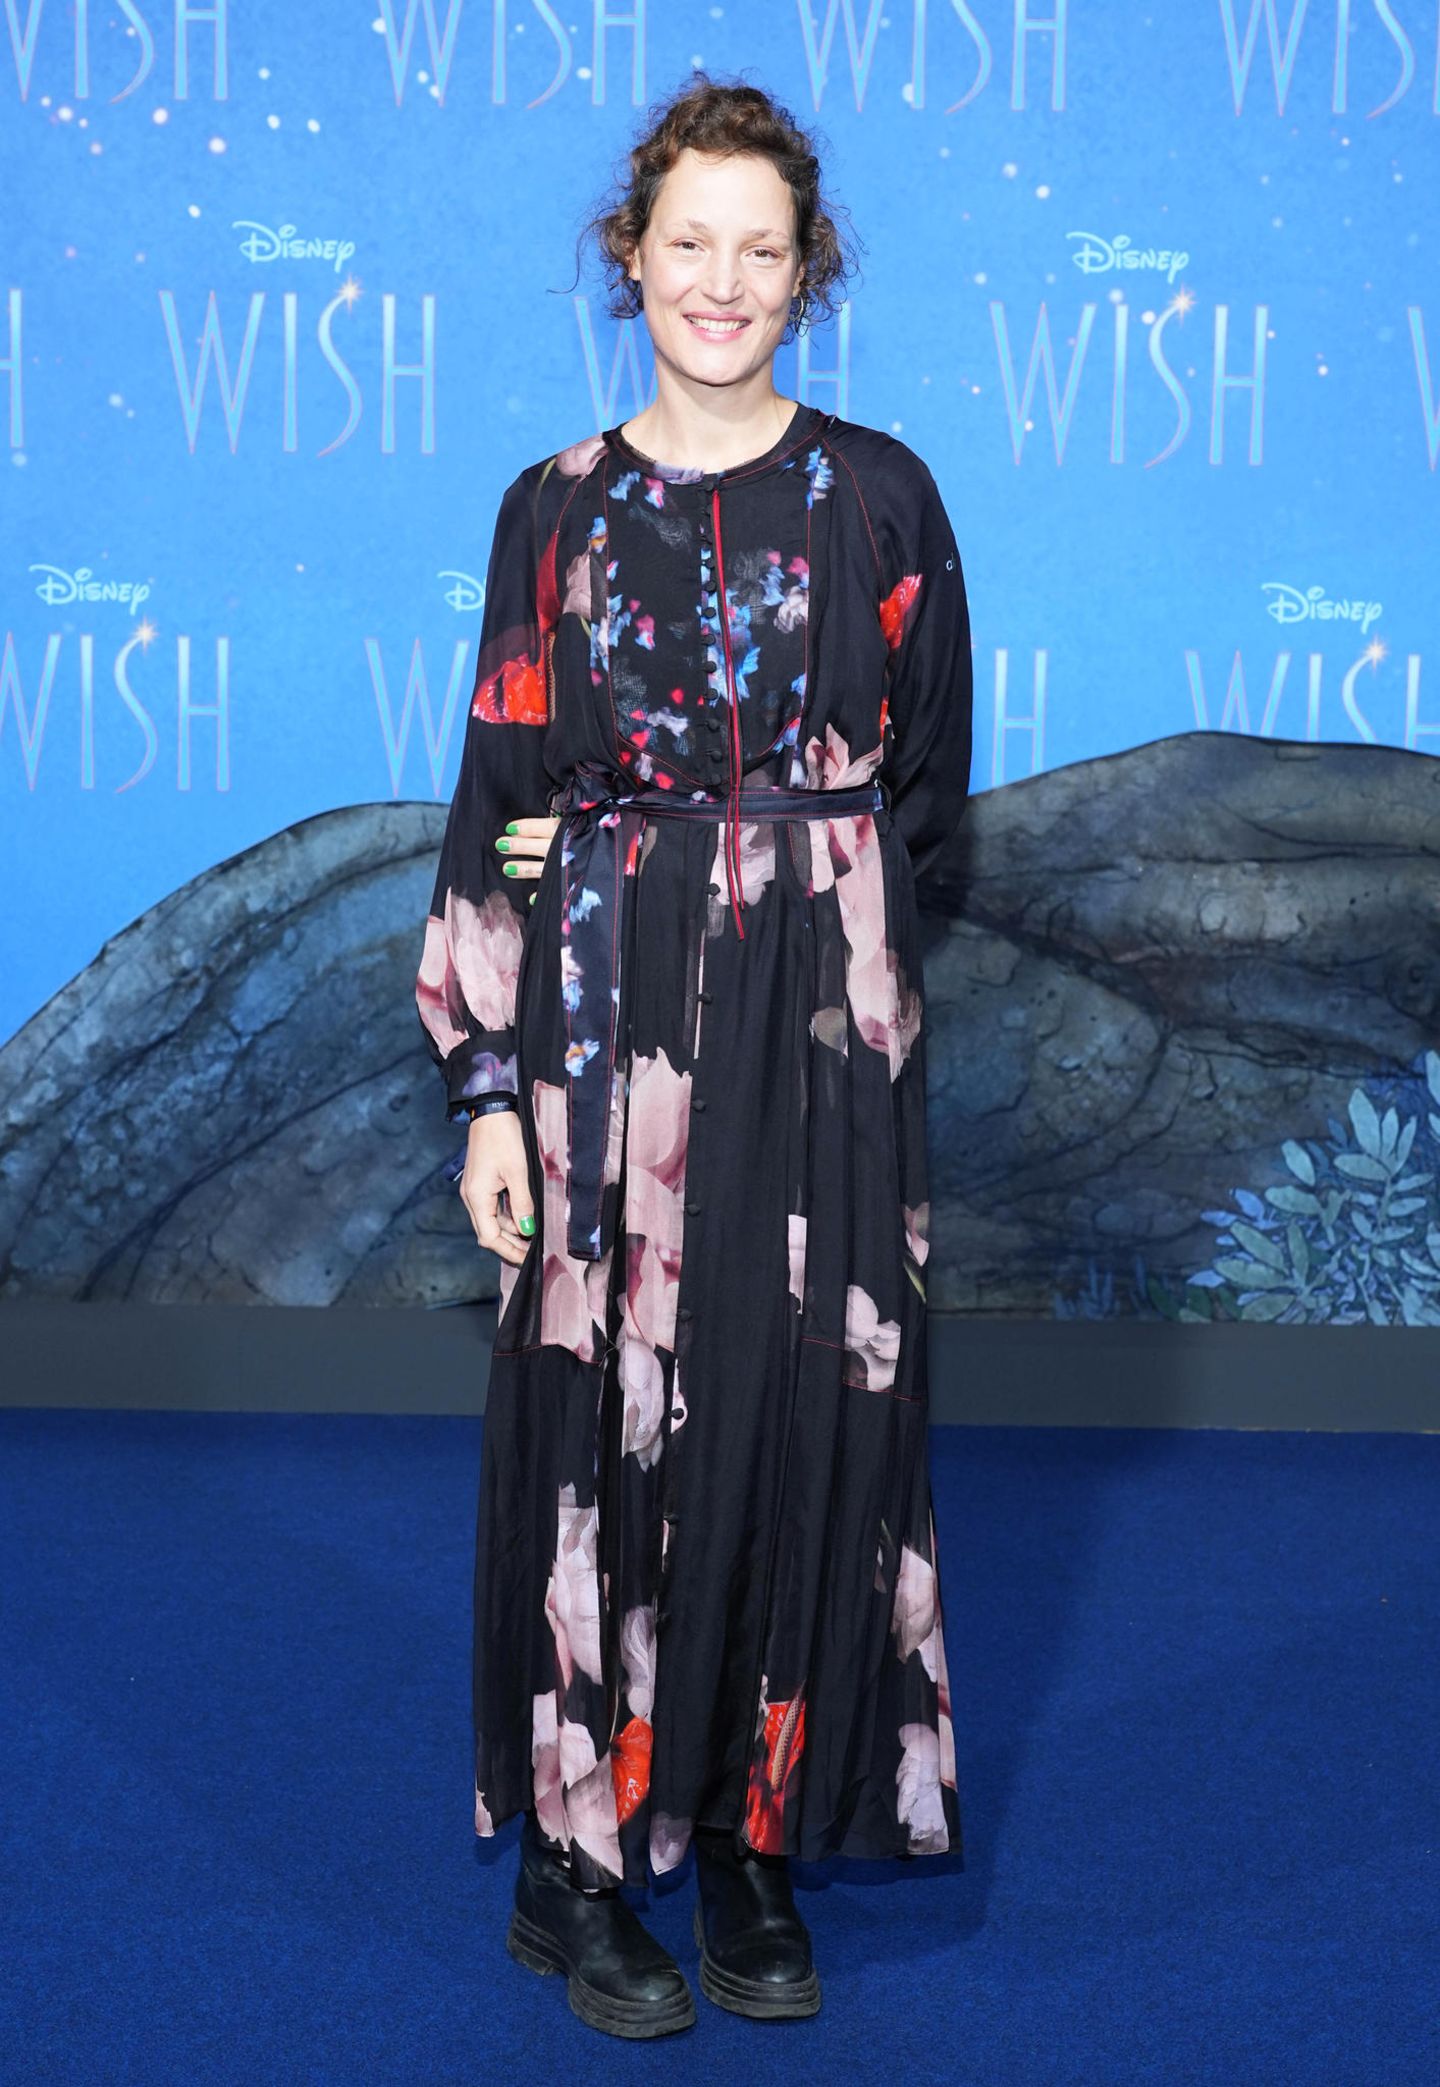 Vicky Krieps zeigt sich bei der Premiere von Disneys "Wish" im schwarzen Blumen-Look ganz romantisch.